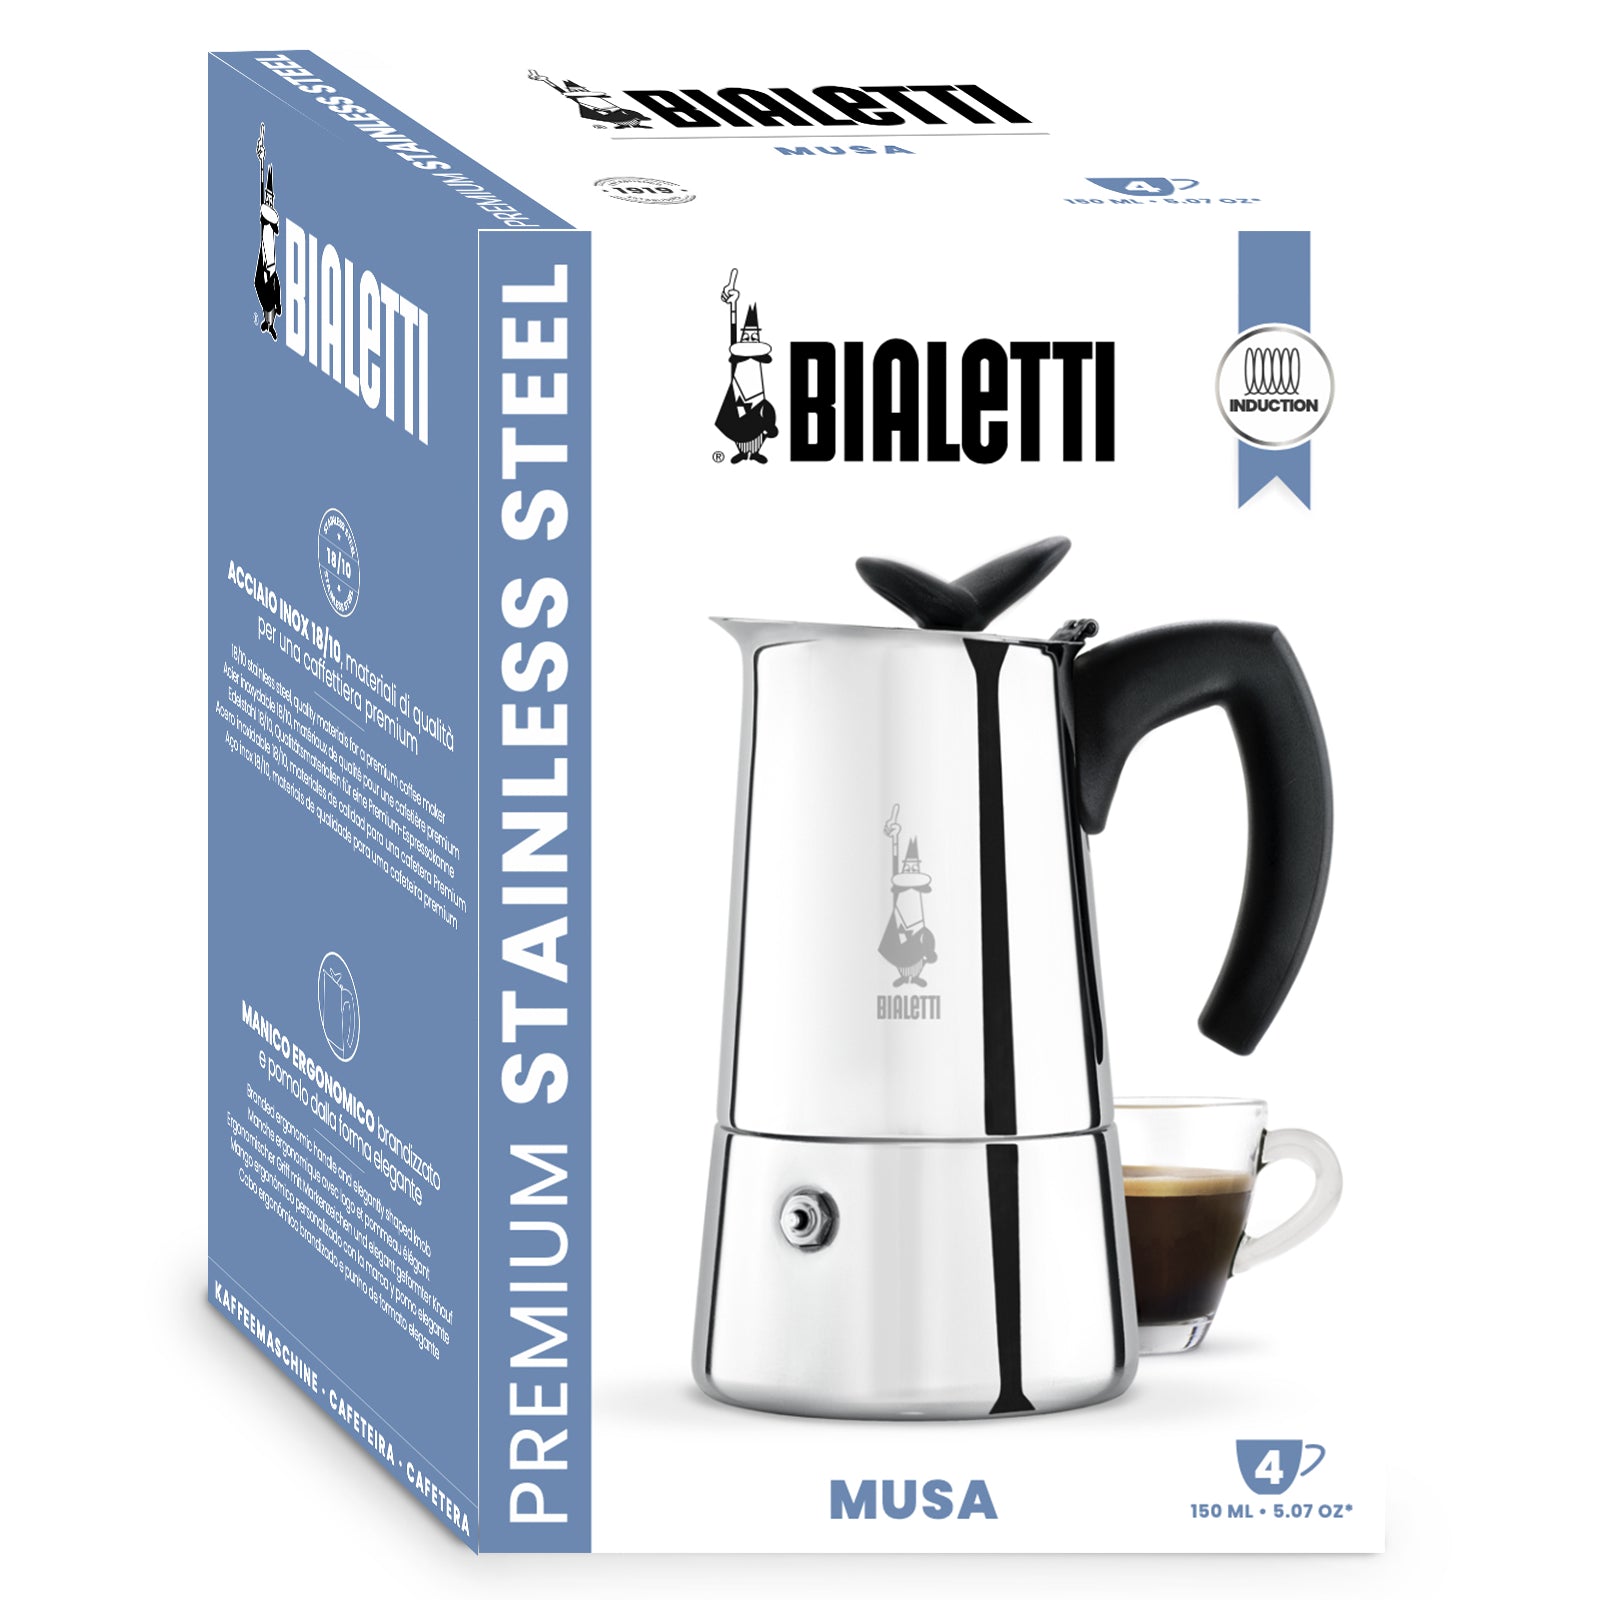 Cafetera Bialetti Musa 4 Tazas – Viaggio Espresso